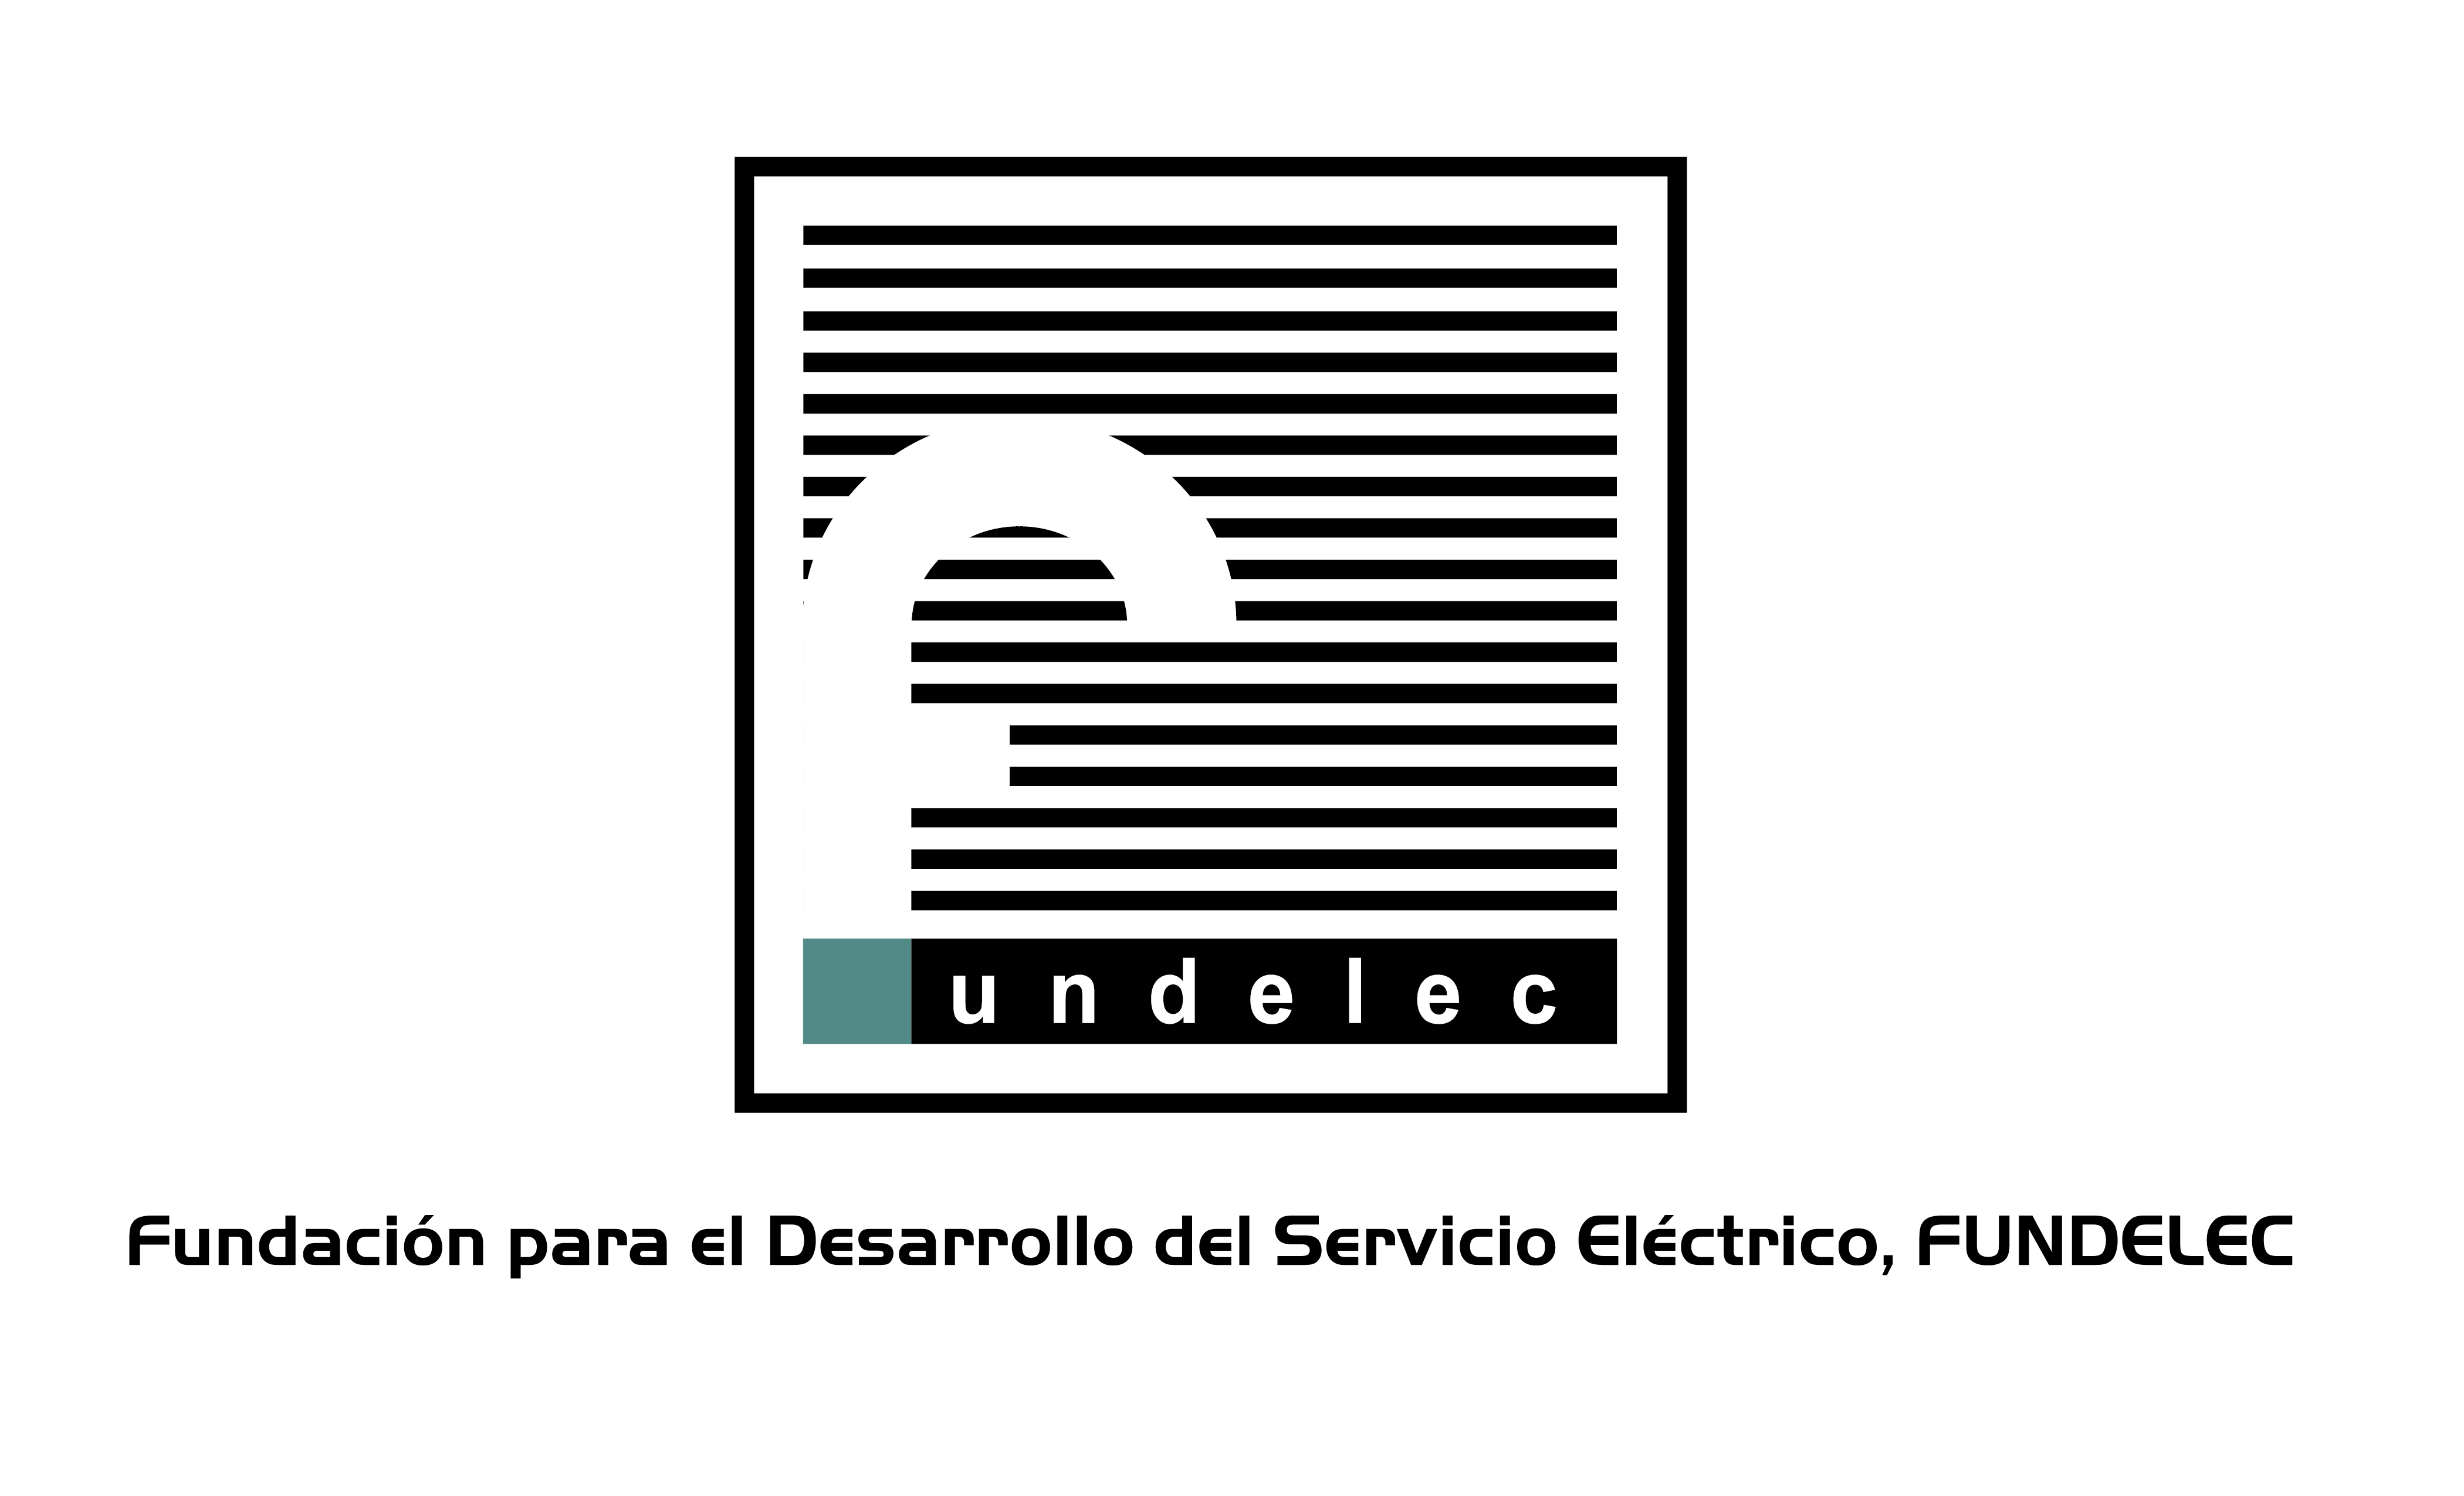 logo Fundaelec